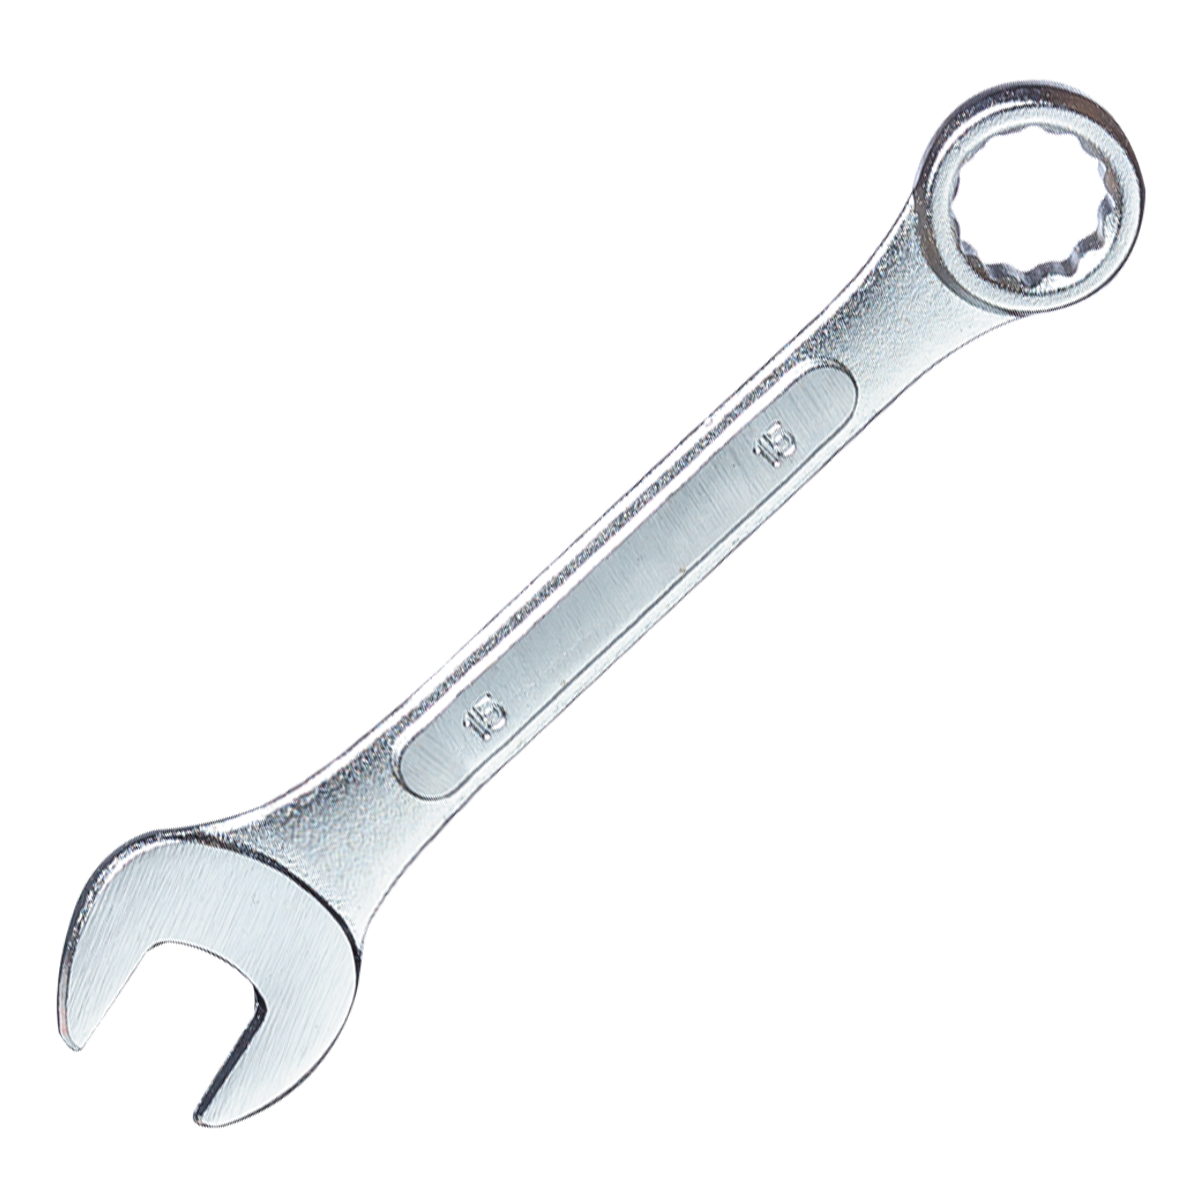 Ключ гаечный комбинированный, 9 мм ZIPOWER COMBINATION SPANNER 9 mm гаечный ключ сибин 27089 08 комбинированный 8 мм